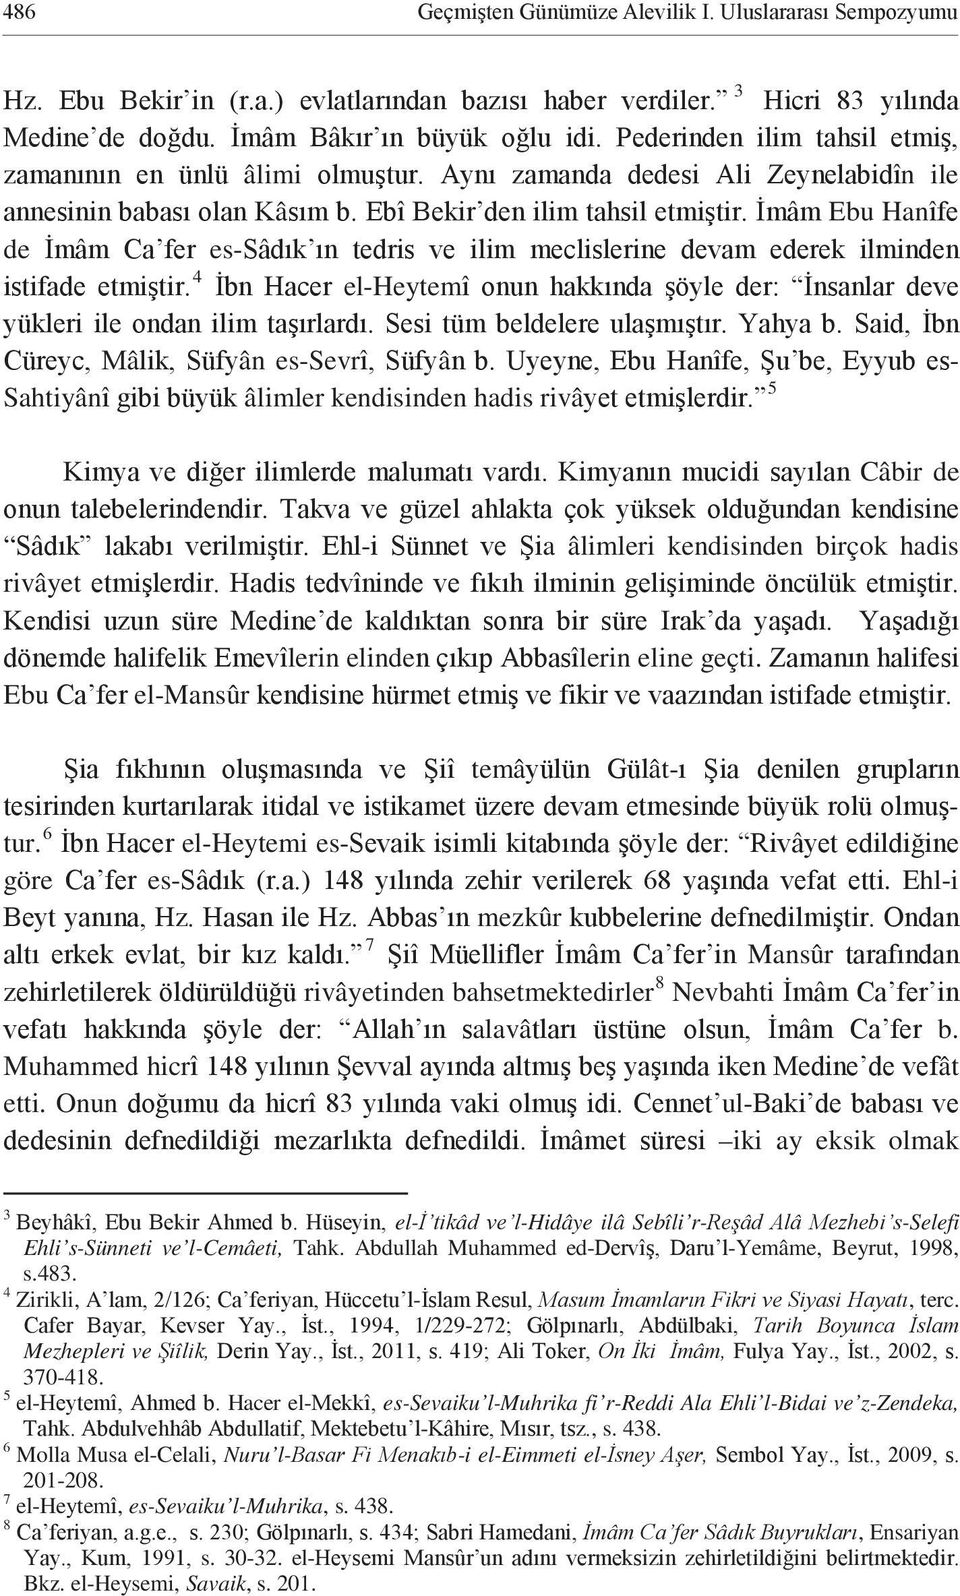 Onun ul- iki ay eksik olmak 3 el- -Hidâye ilâ Sebîli r- -Selefi Ehli s-sünneti ve l-cemâeti, Tahk. Abdullah Muhammed ed- -Yemâme, Beyrut, 1998, s.483. 4 Zirikli, A -, terc.